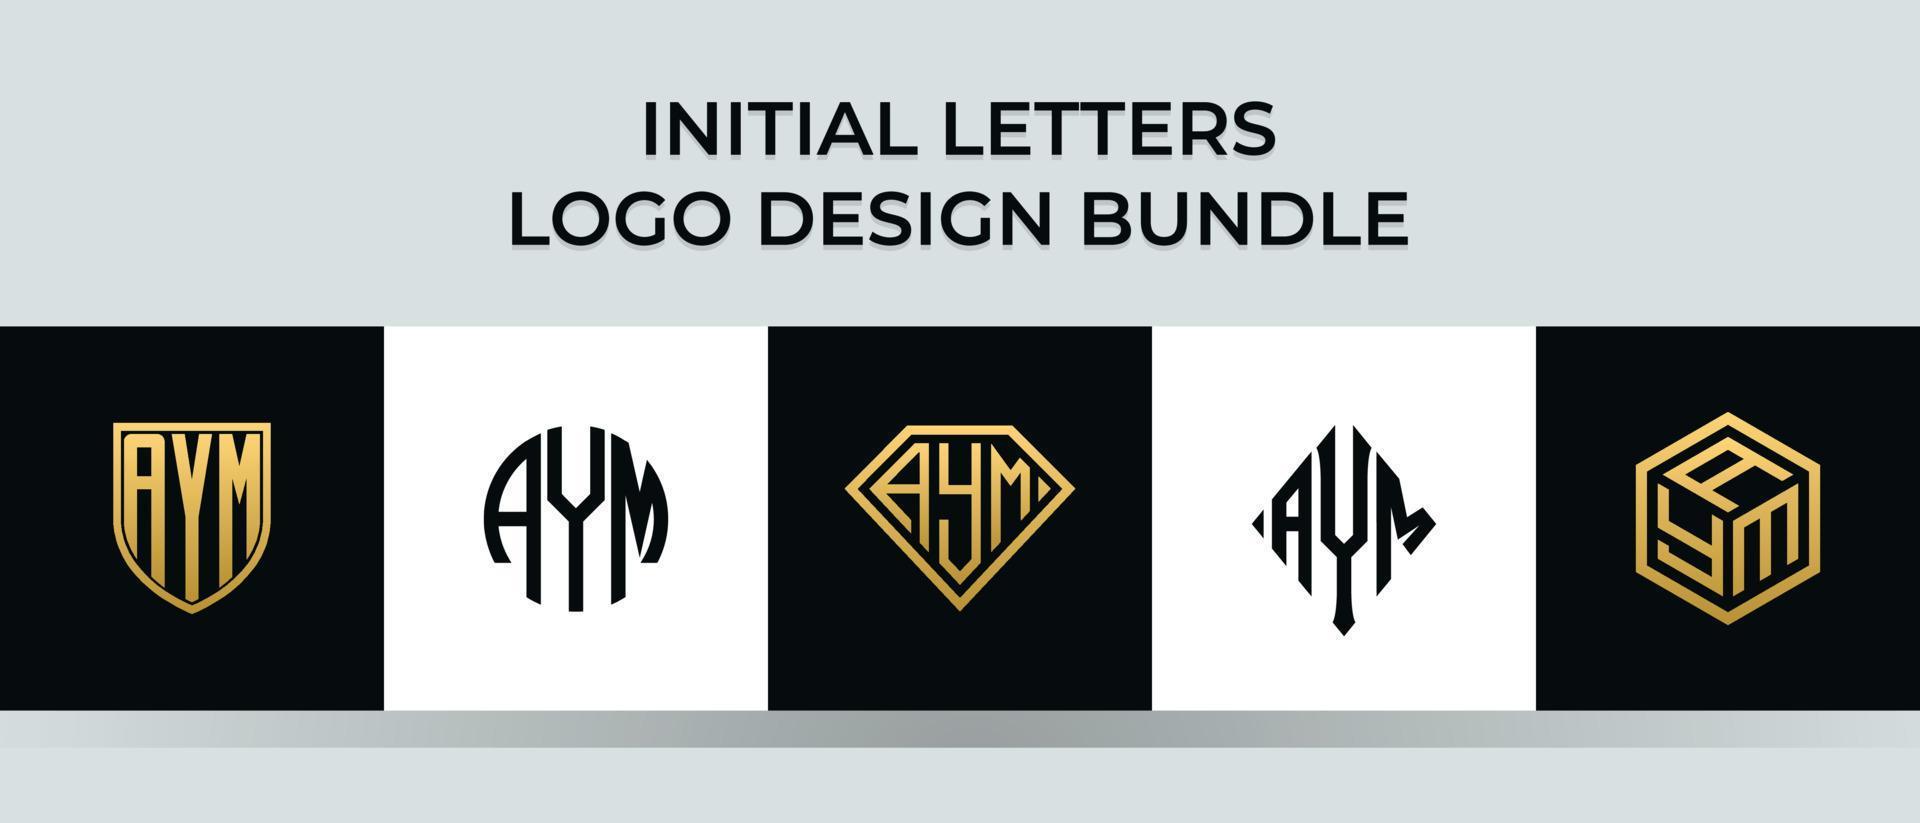 beginletters aym logo ontwerpen bundel vector